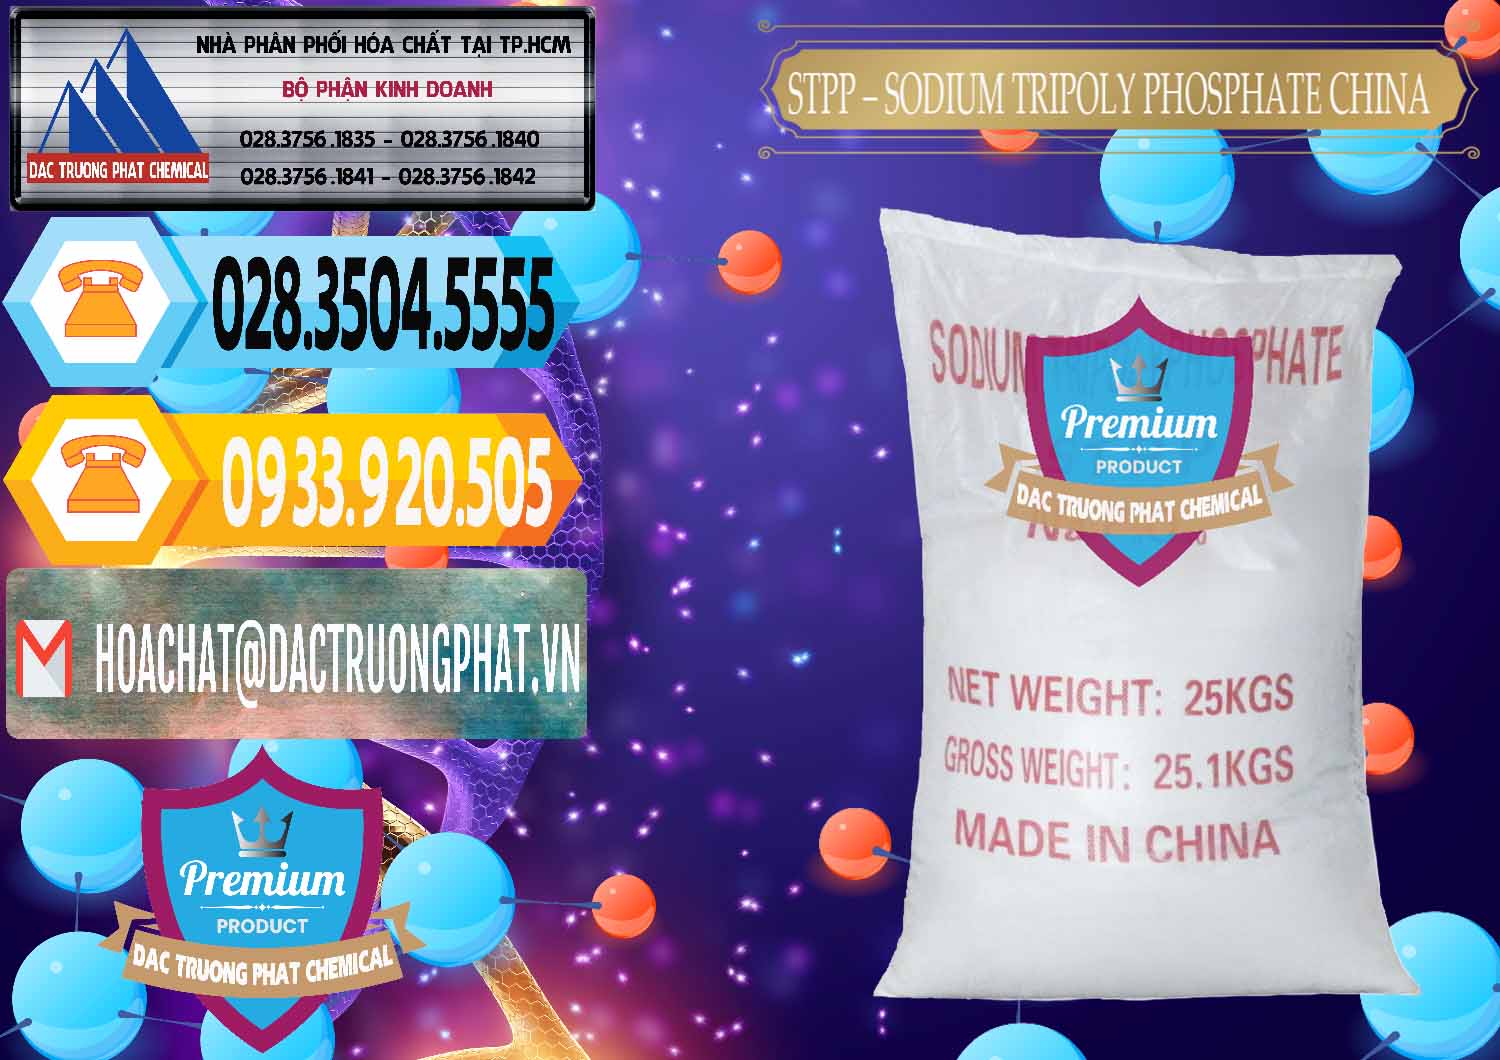 Cty cung cấp & bán Sodium Tripoly Phosphate - STPP 96% Chữ Đỏ Trung Quốc China - 0155 - Nhà phân phối - cung cấp hóa chất tại TP.HCM - hoachattayrua.net